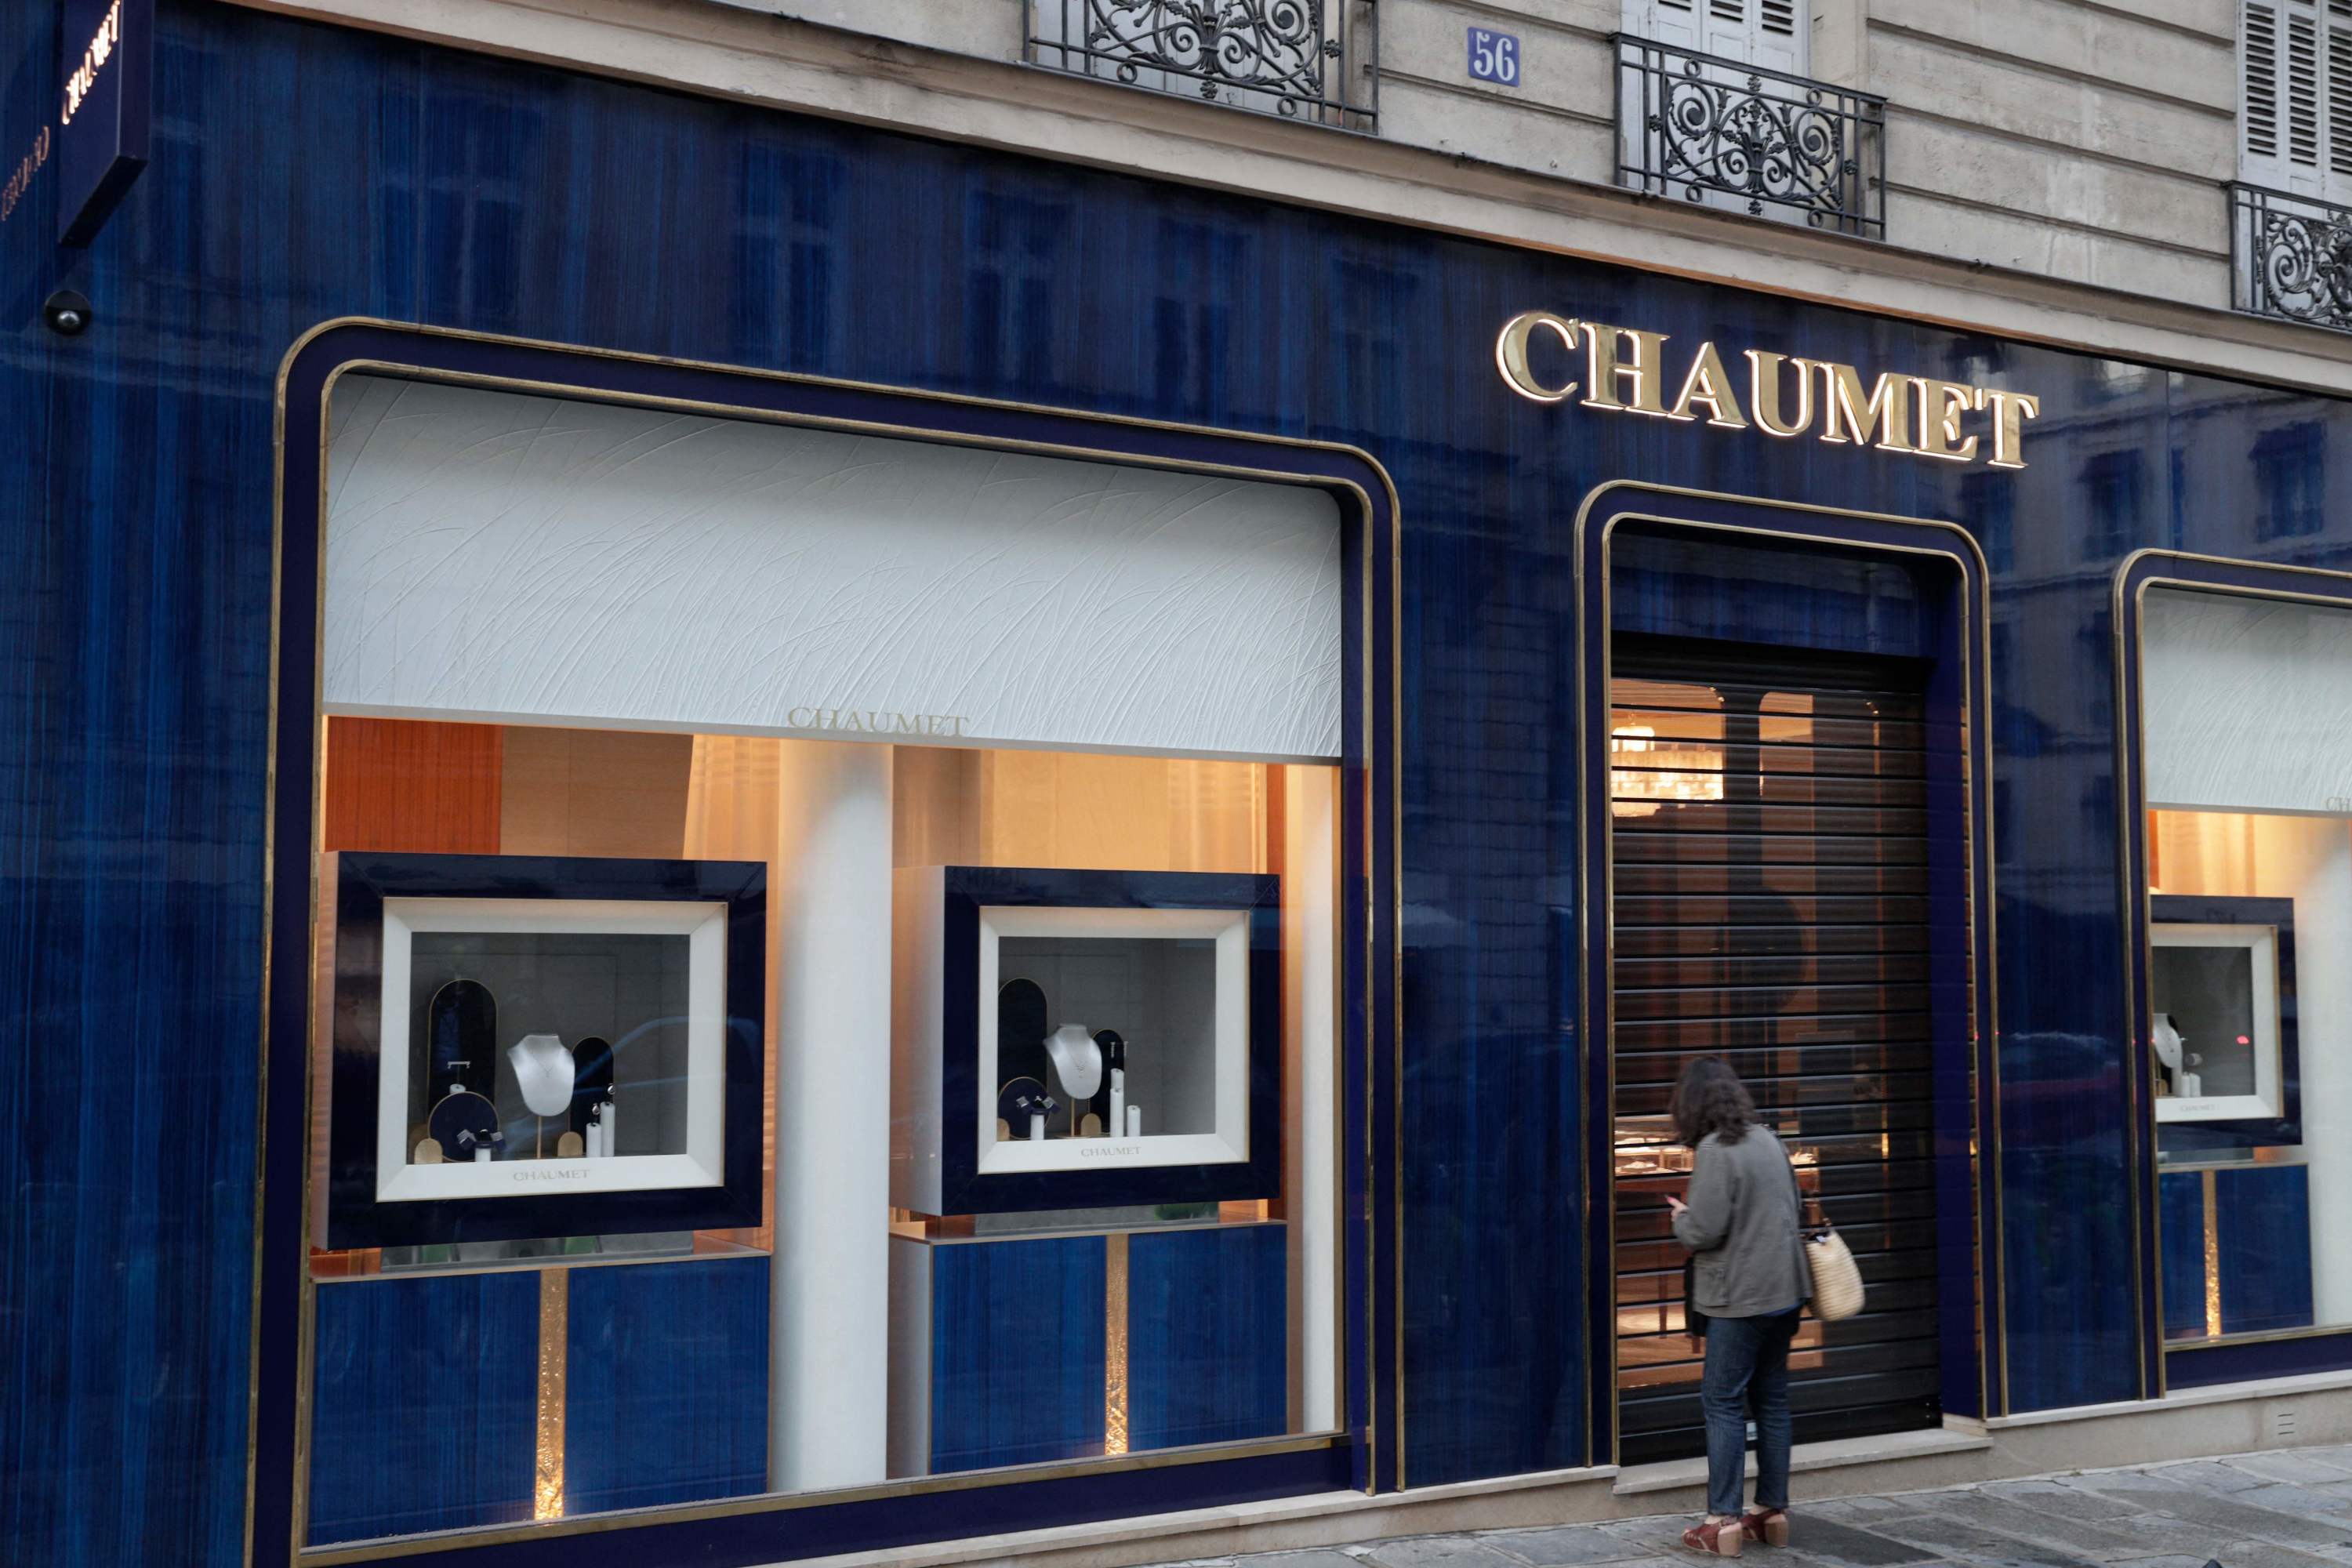 Braquage d'une bijouterie Chaumet à Paris : deux suspects interpellés avec l'essentiel du butin